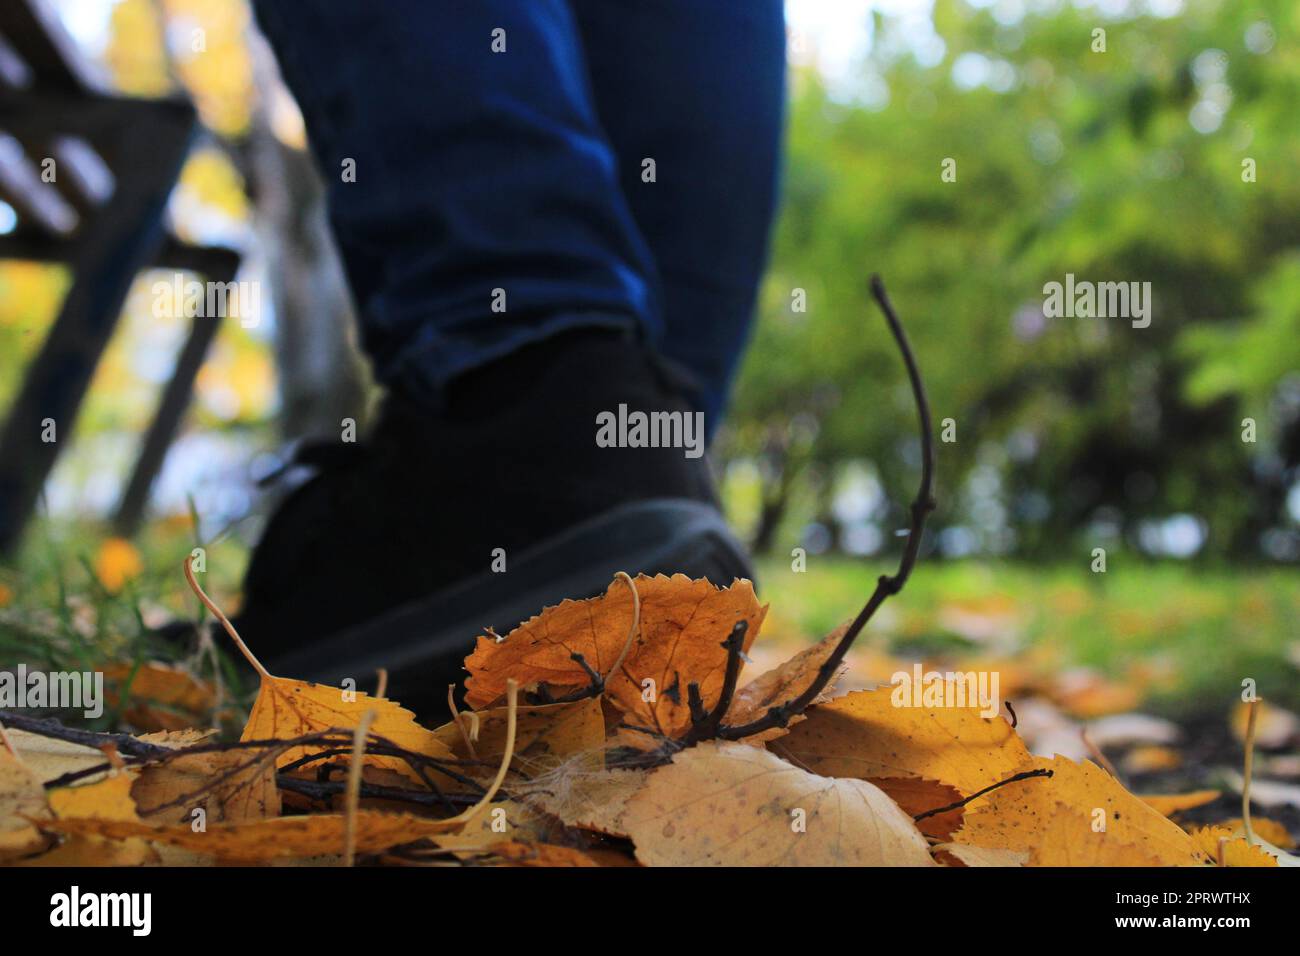 Jambes pour femmes en jeans bleus et baskets noires sur fond de feuilles jaune-orange d'automne. Arrière-plan flou Banque D'Images